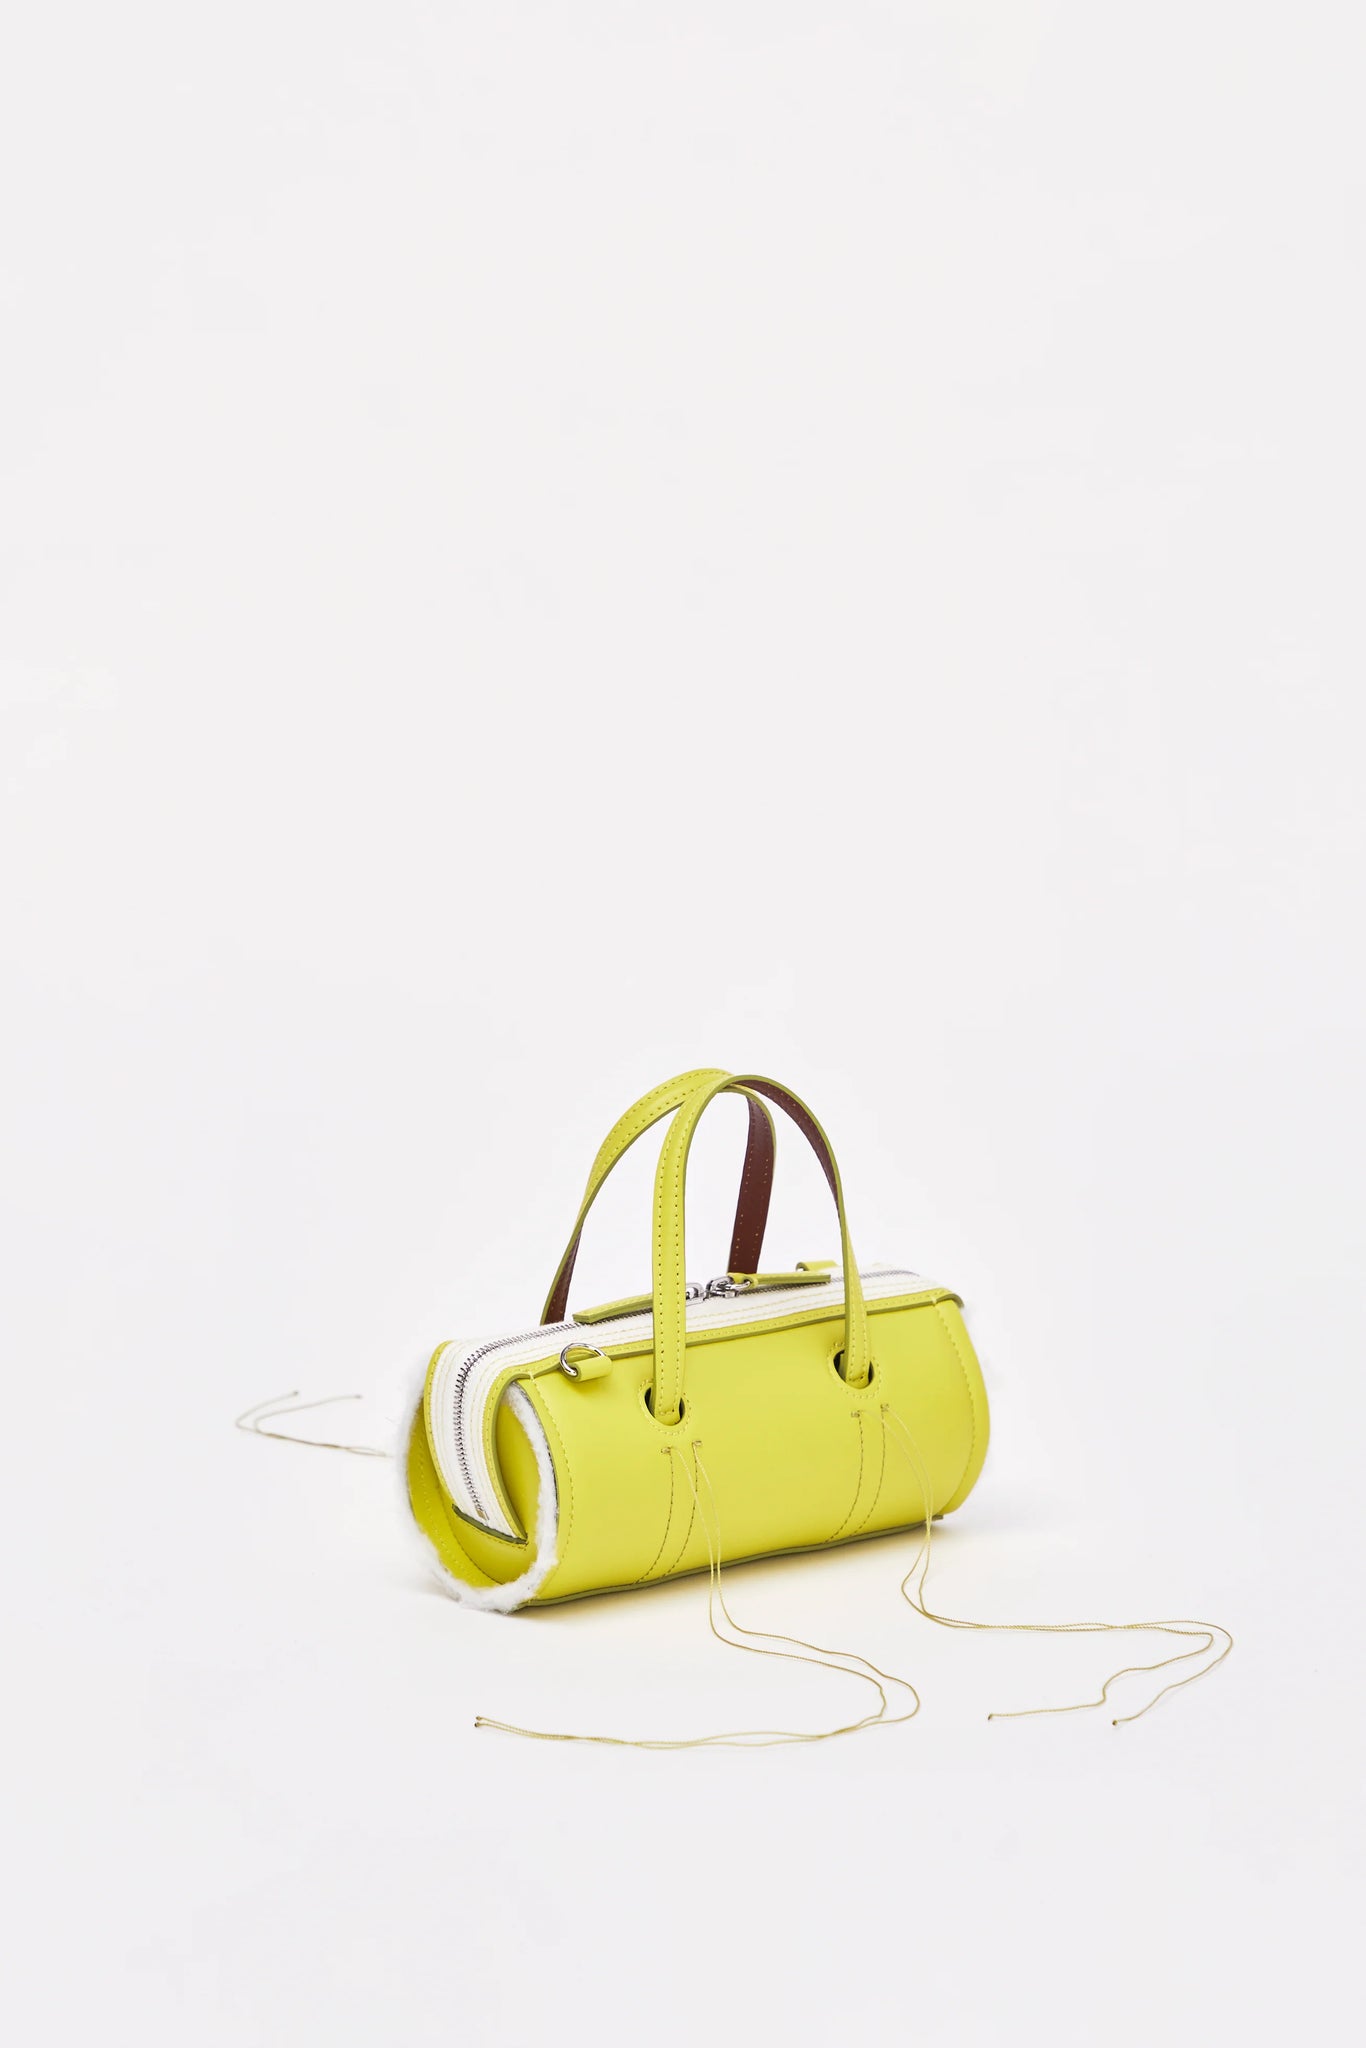 Anona Lime Yellow Mini Bag